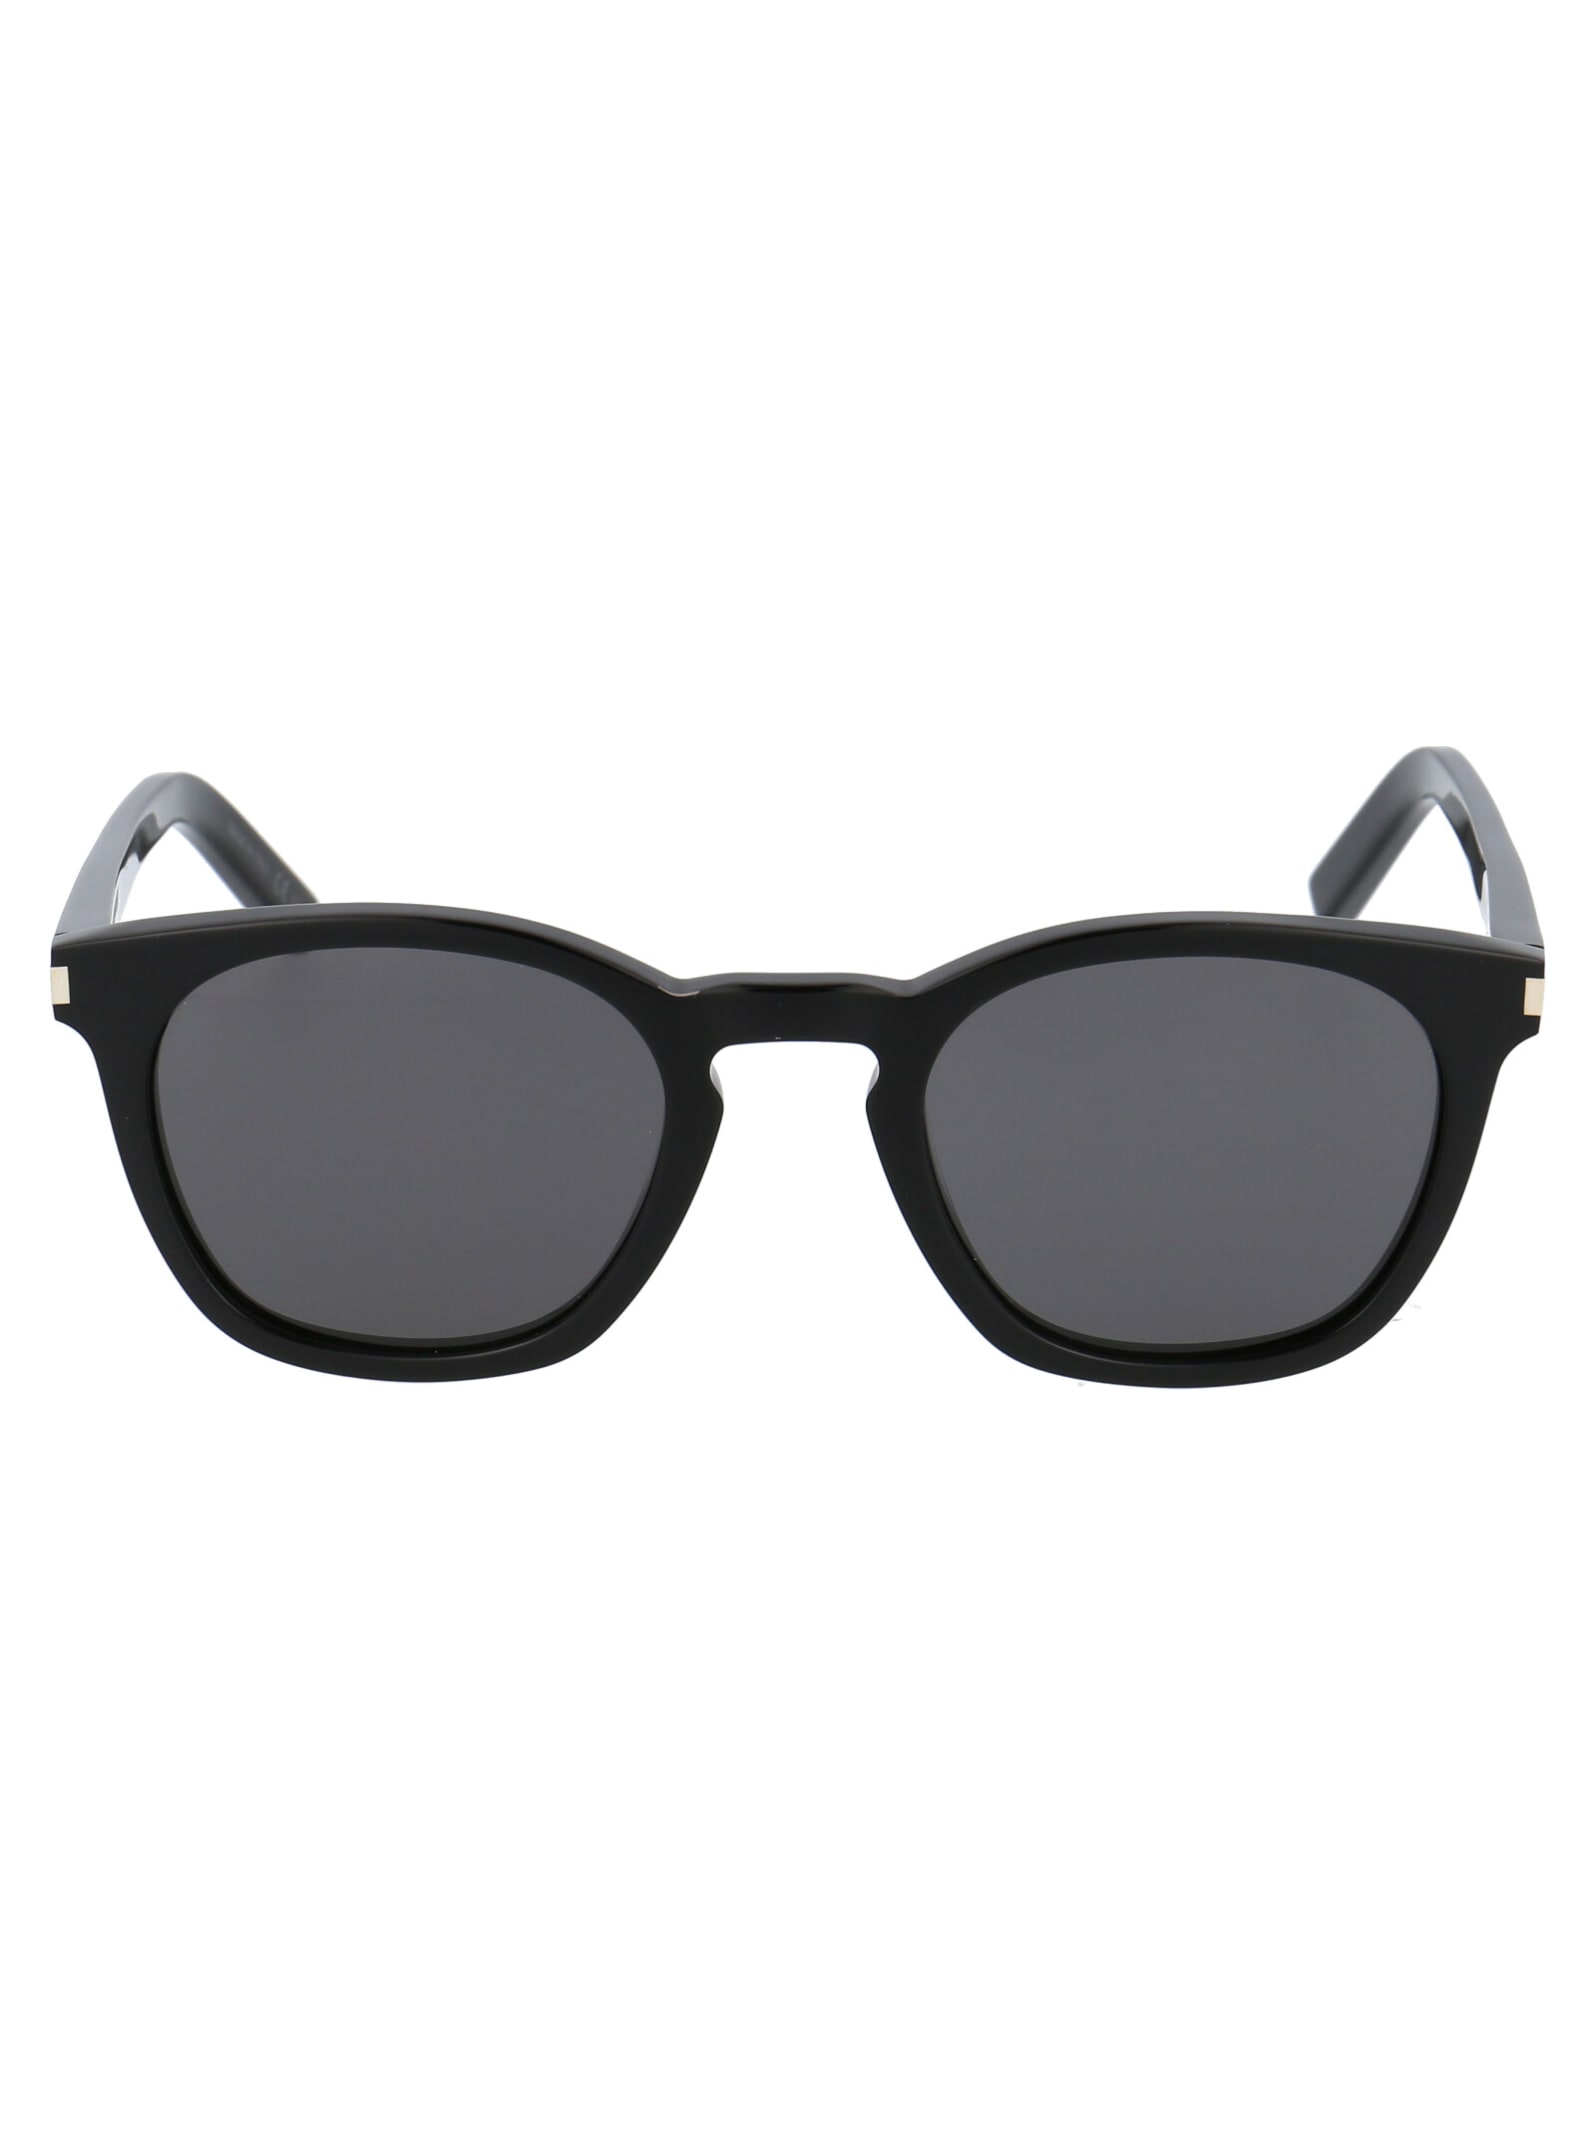 Saint Laurent Eyewear Sl 28 Sunglasses